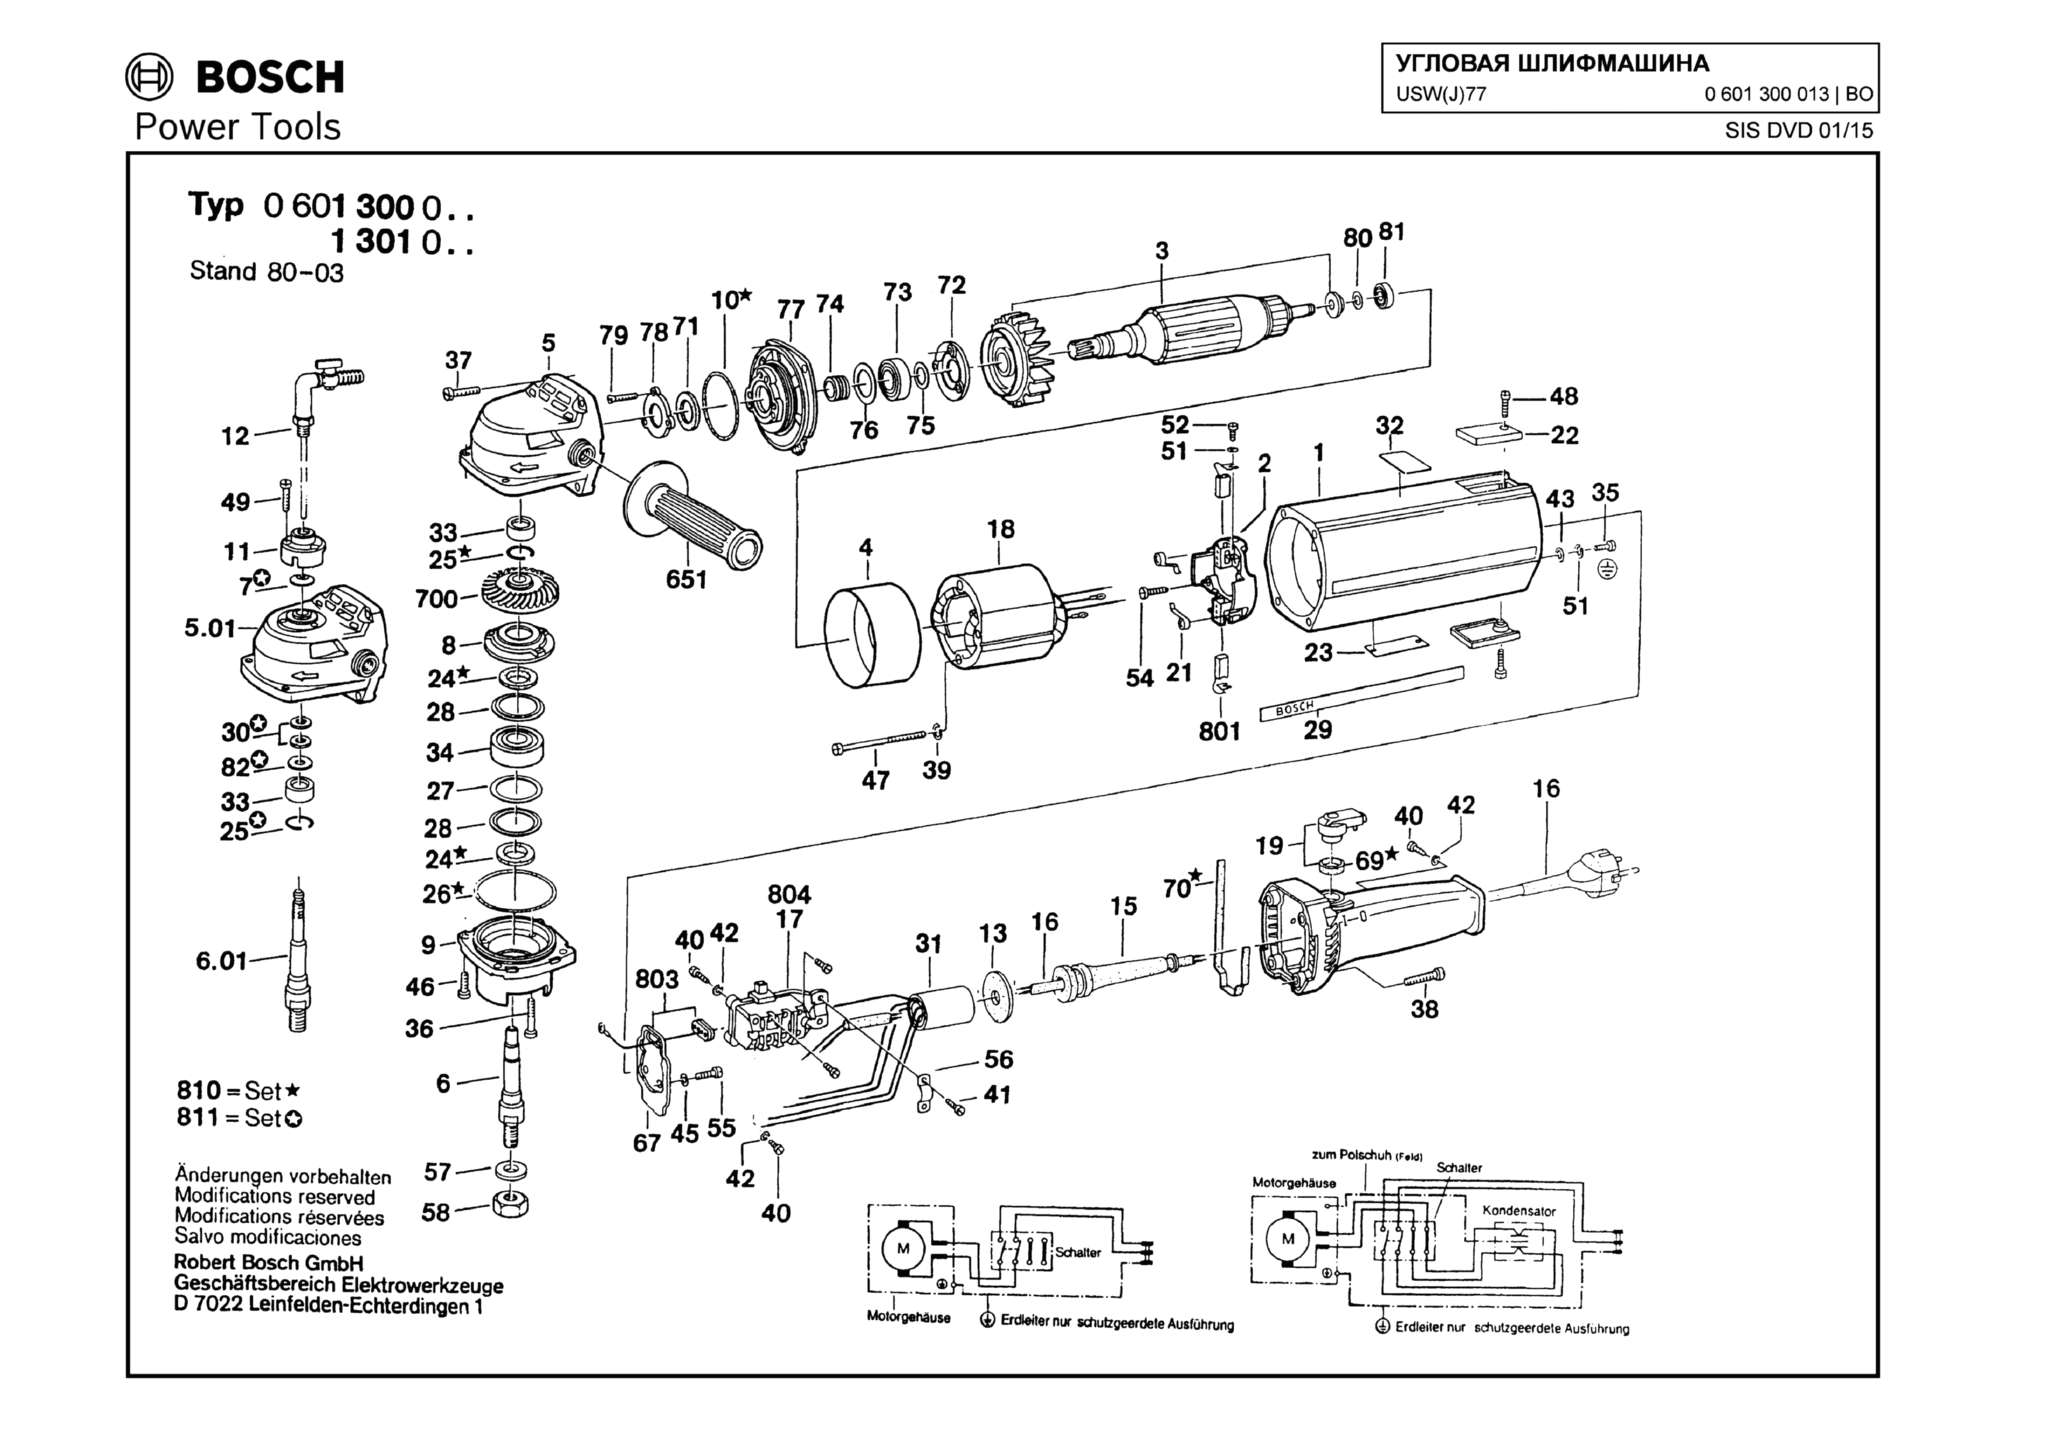 Запчасти, схема и деталировка Bosch USW(J)77 (ТИП 0601300013)